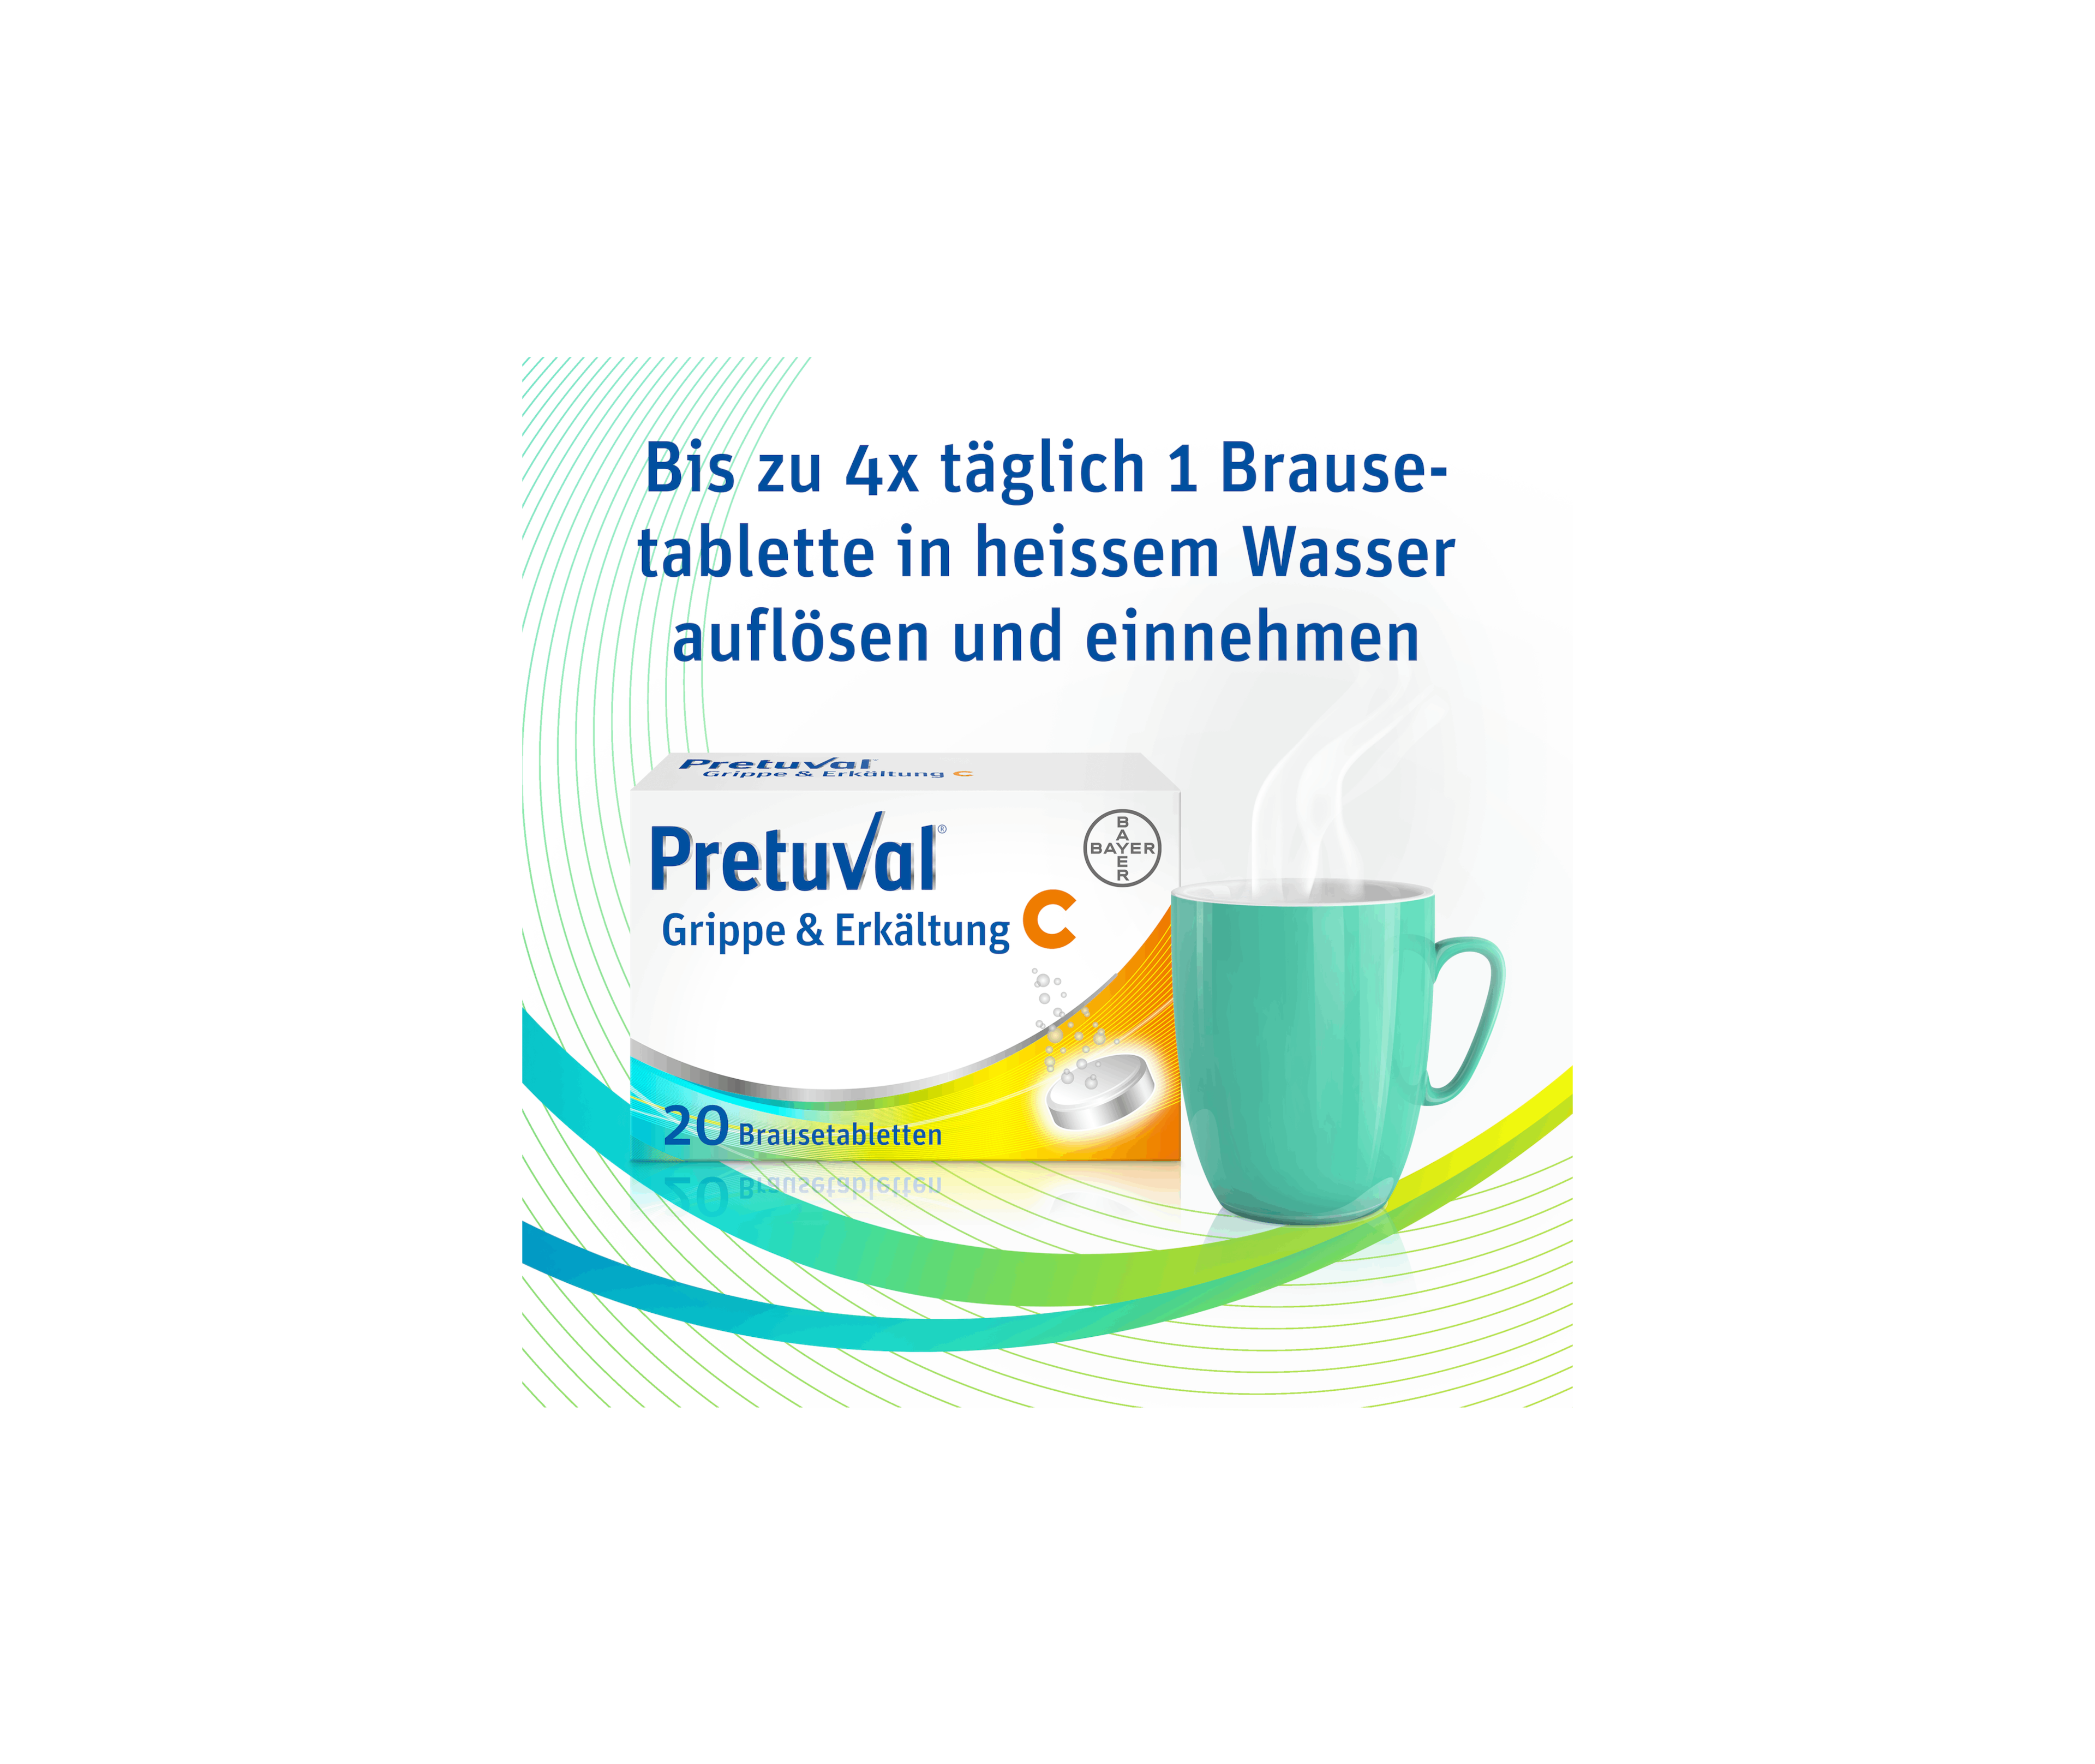 Pretuval® Grippe & Erkältung C – 20 Brausetabletten